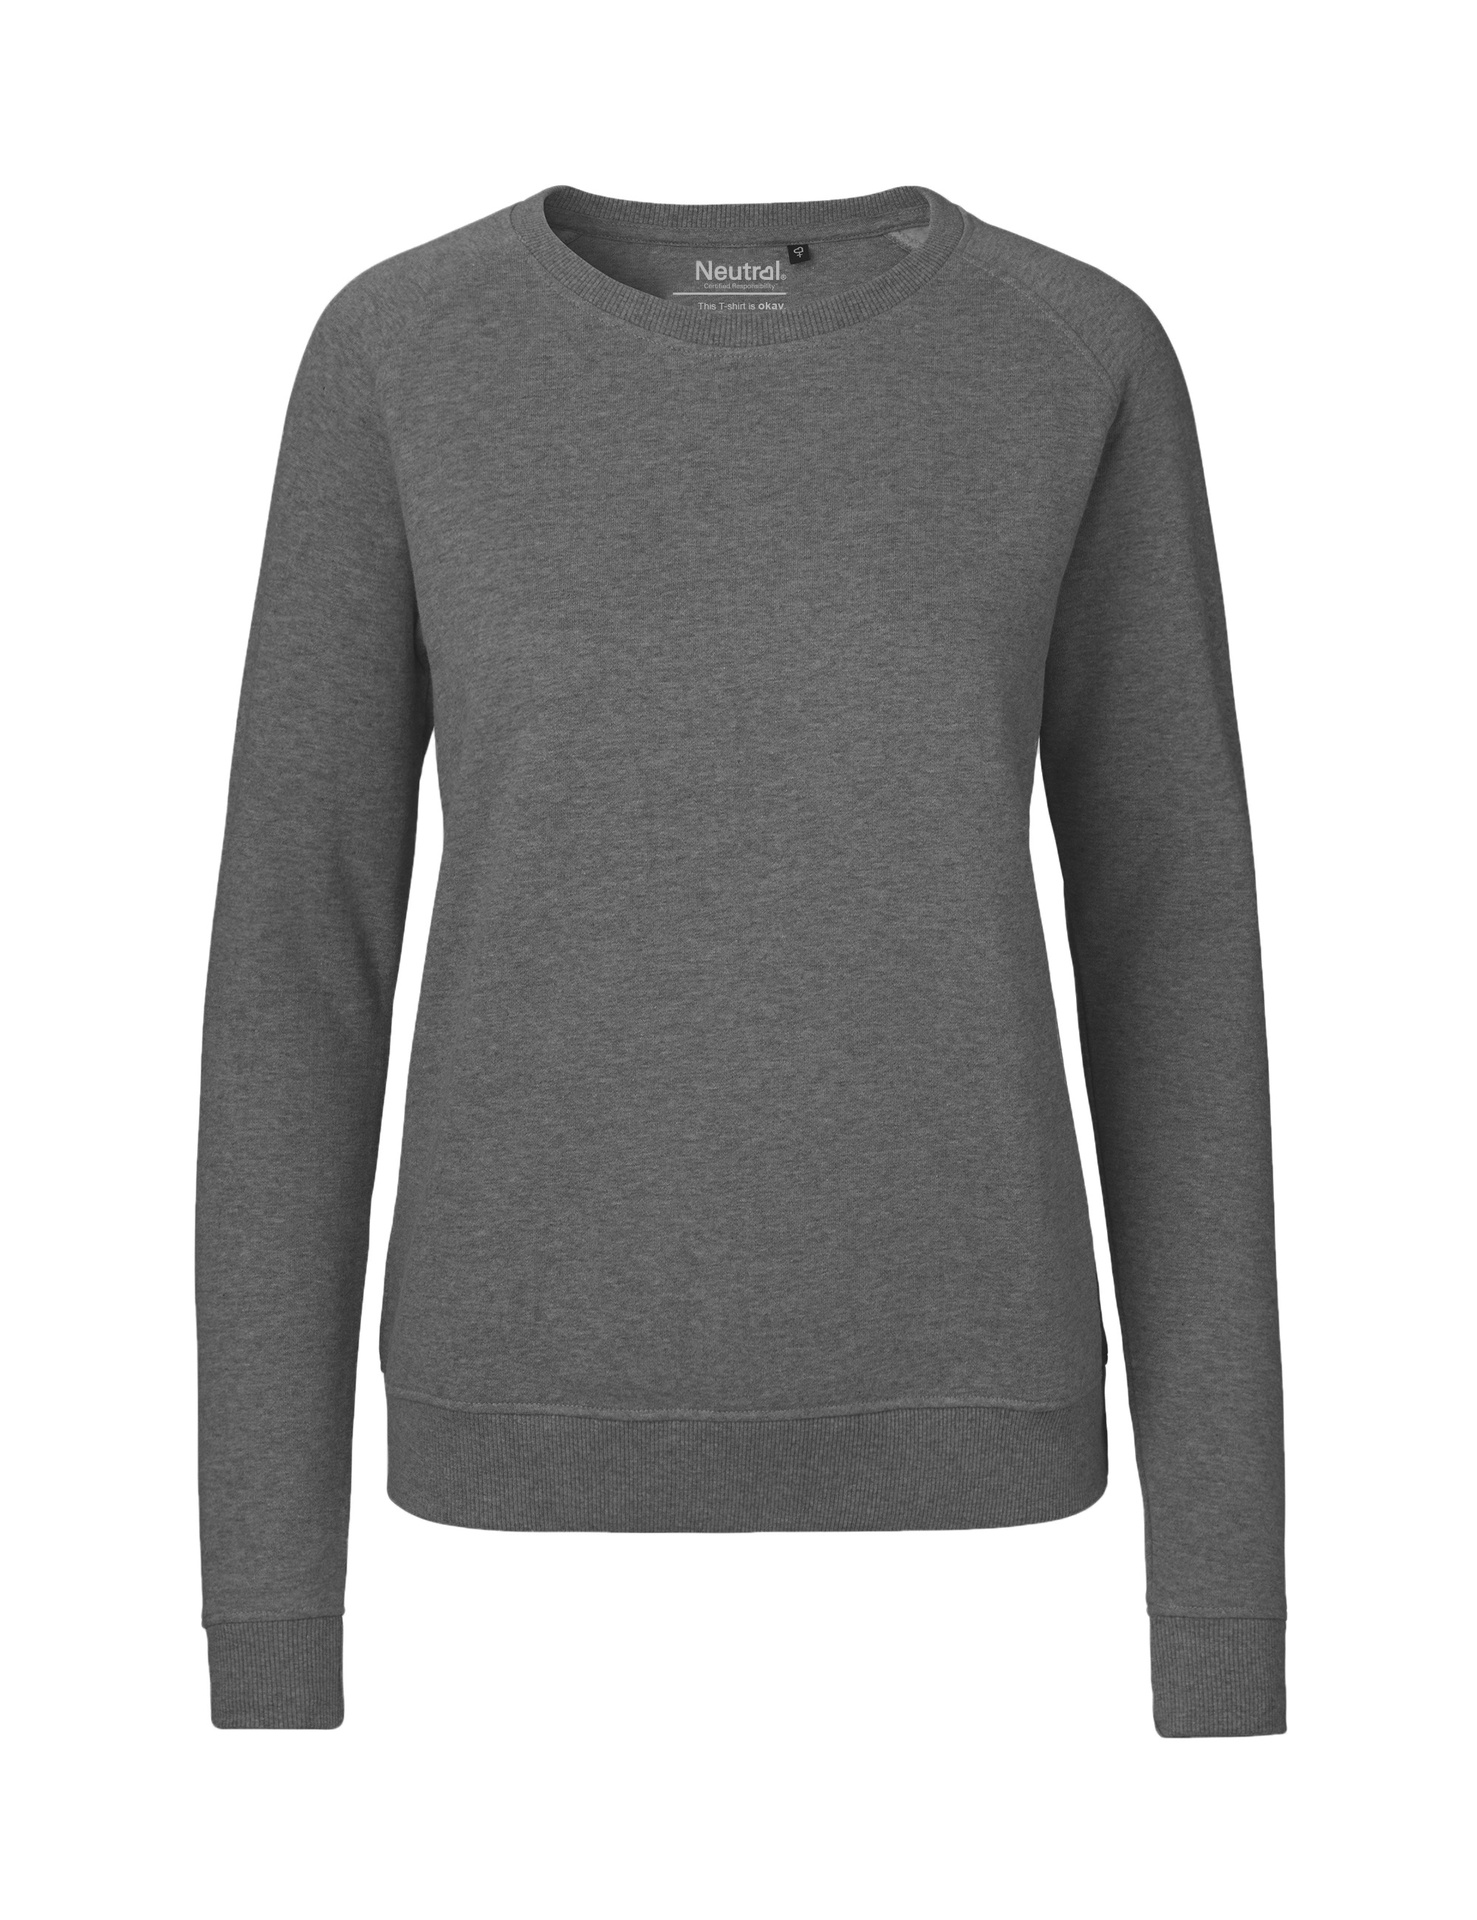 [PR/04874] Ladies Sweatshirt (Dark Heather 08, XS)